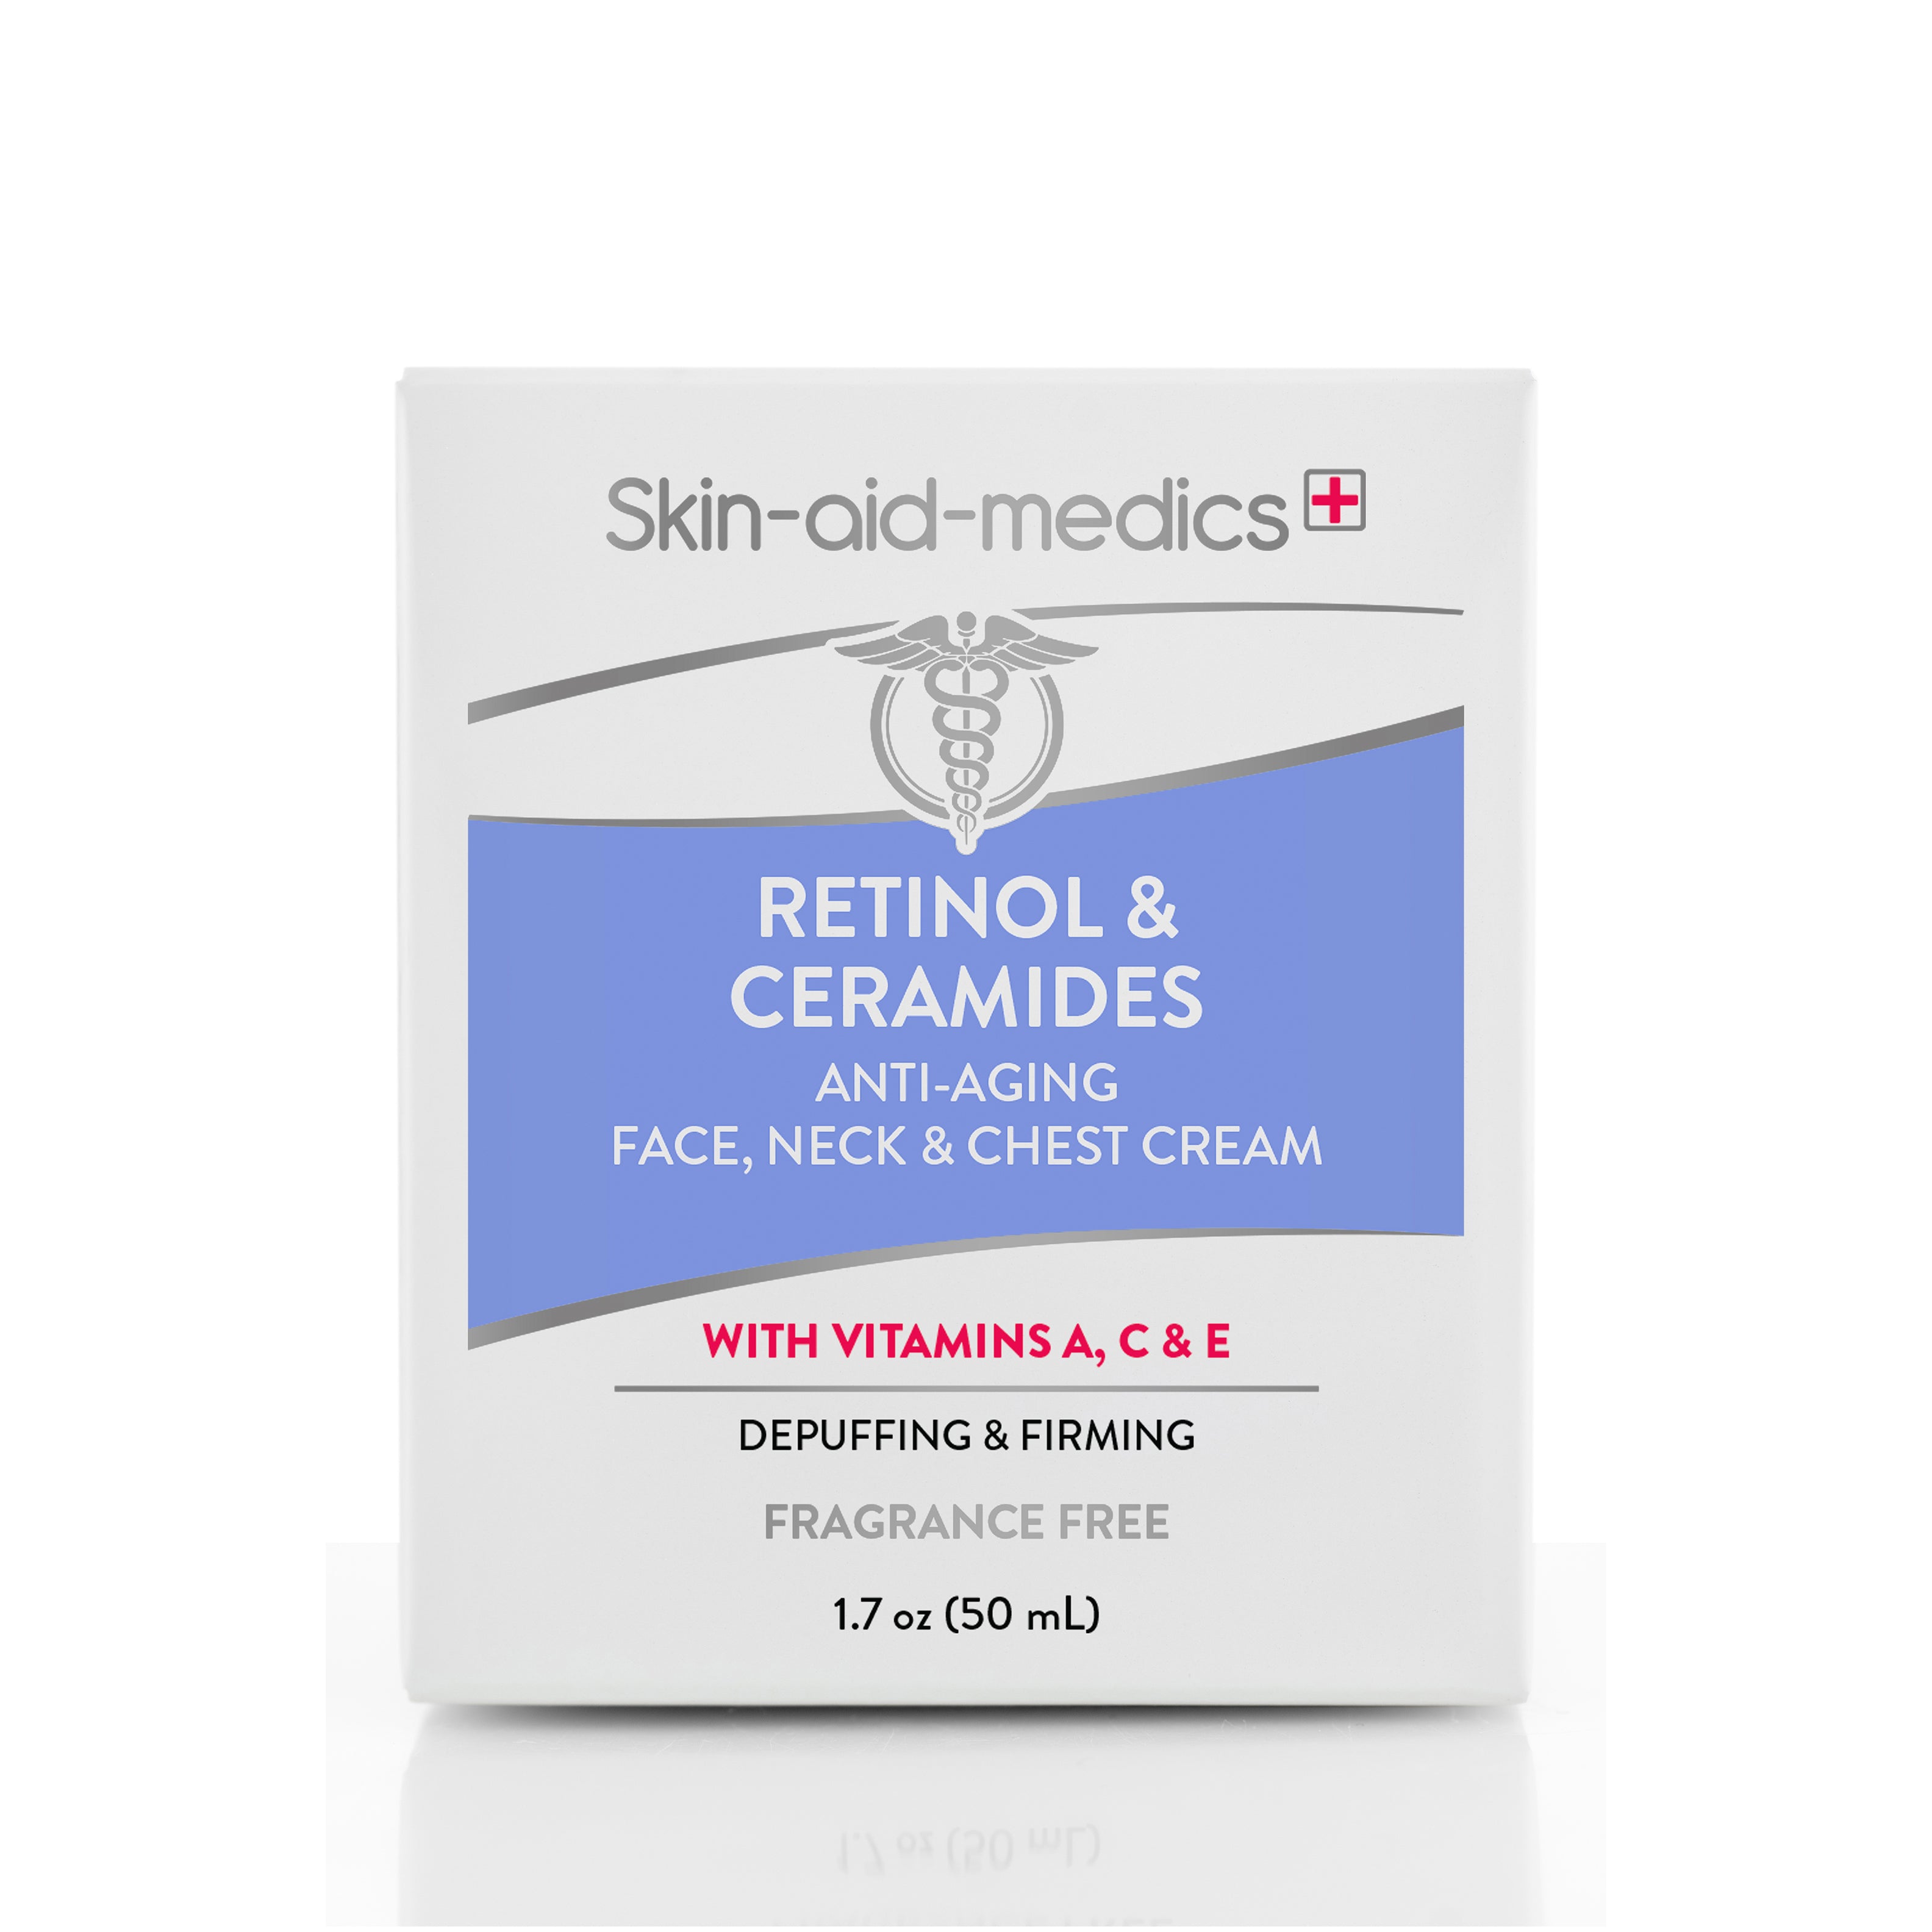 Retinol & Ceramides Anti-Aging Face, Neck & Chest Cream